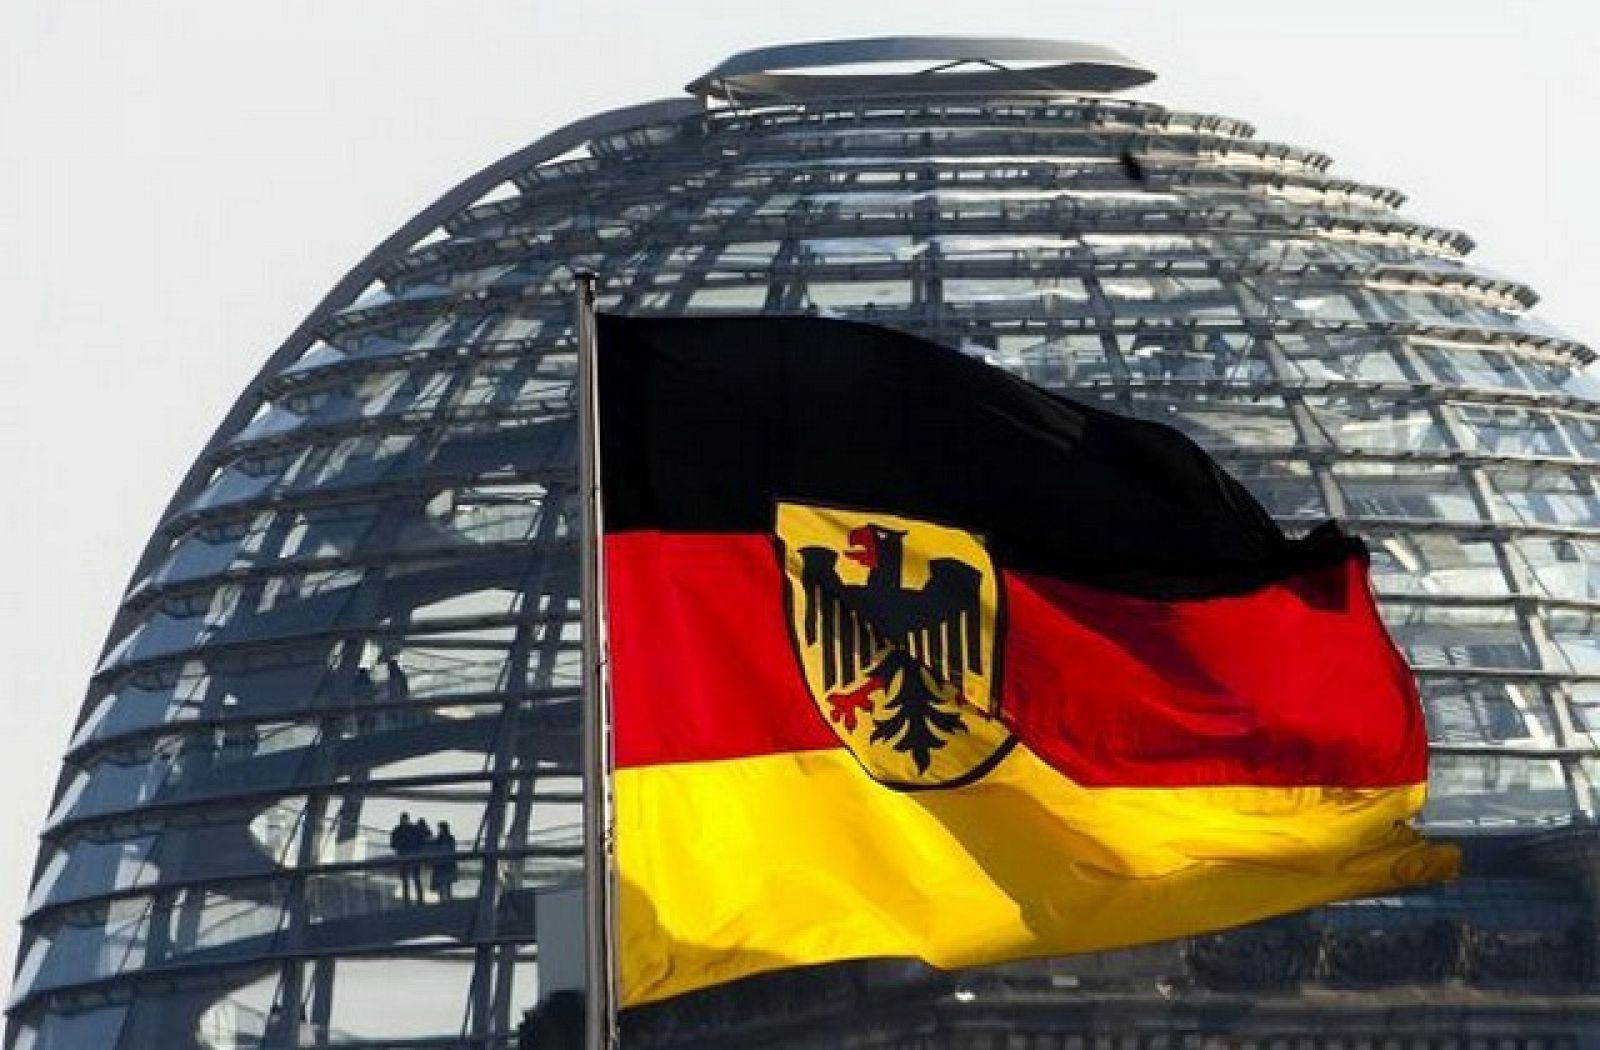 Bandera alemana ante la cúpula del Reichstag